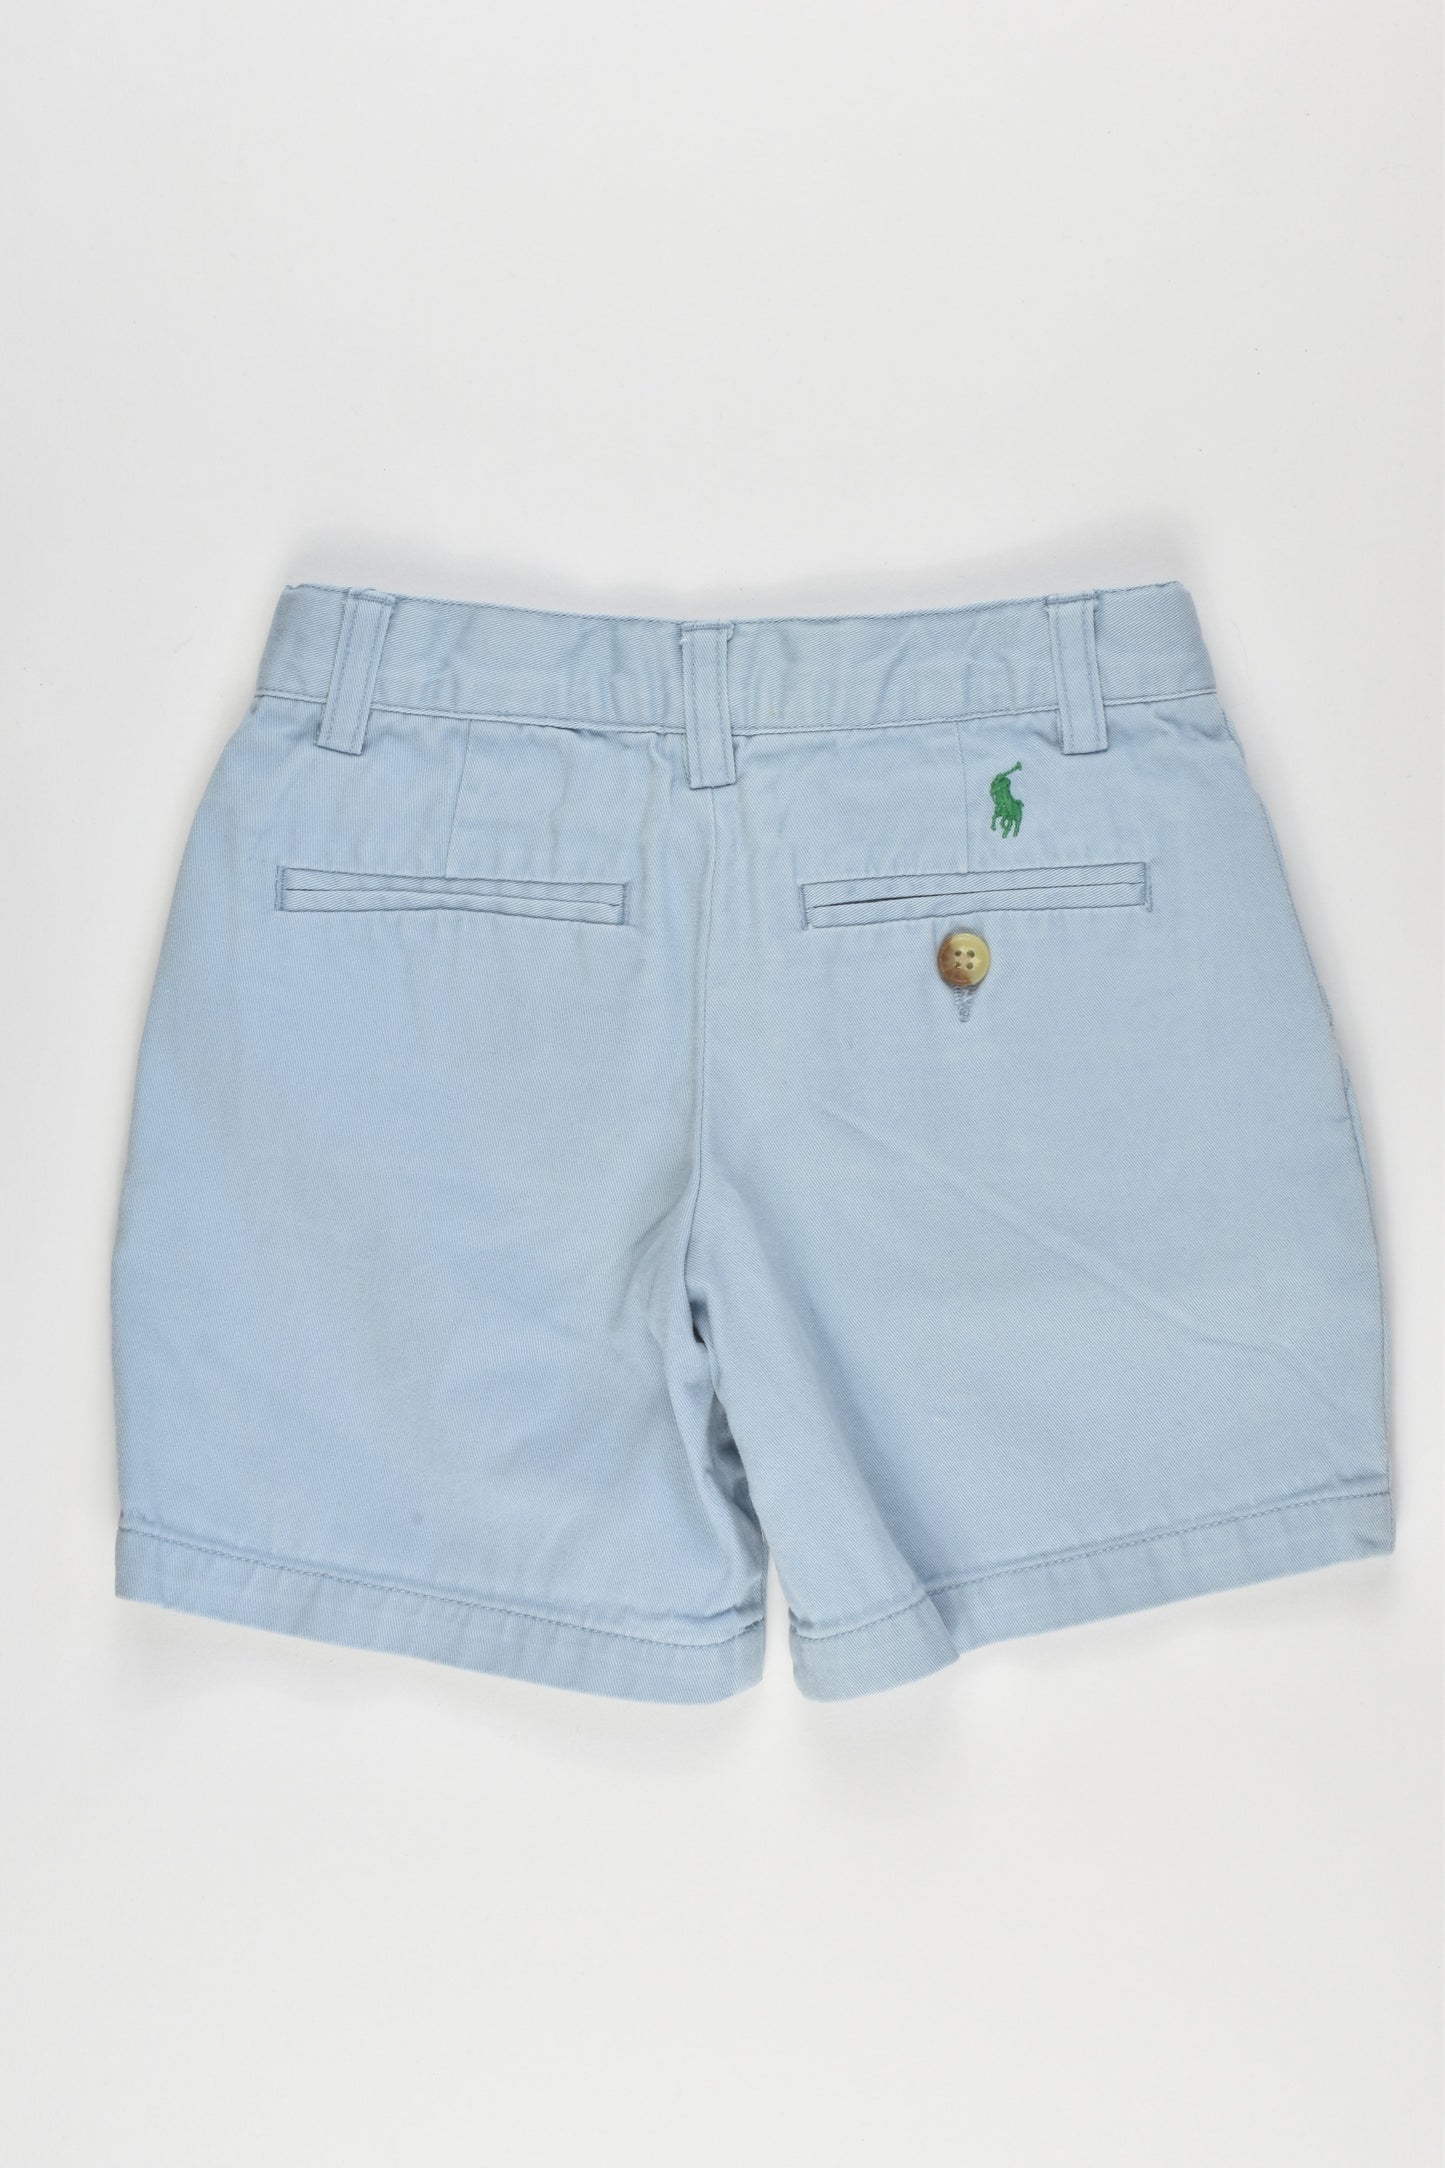 Ralph Lauren Size 3 Shorts